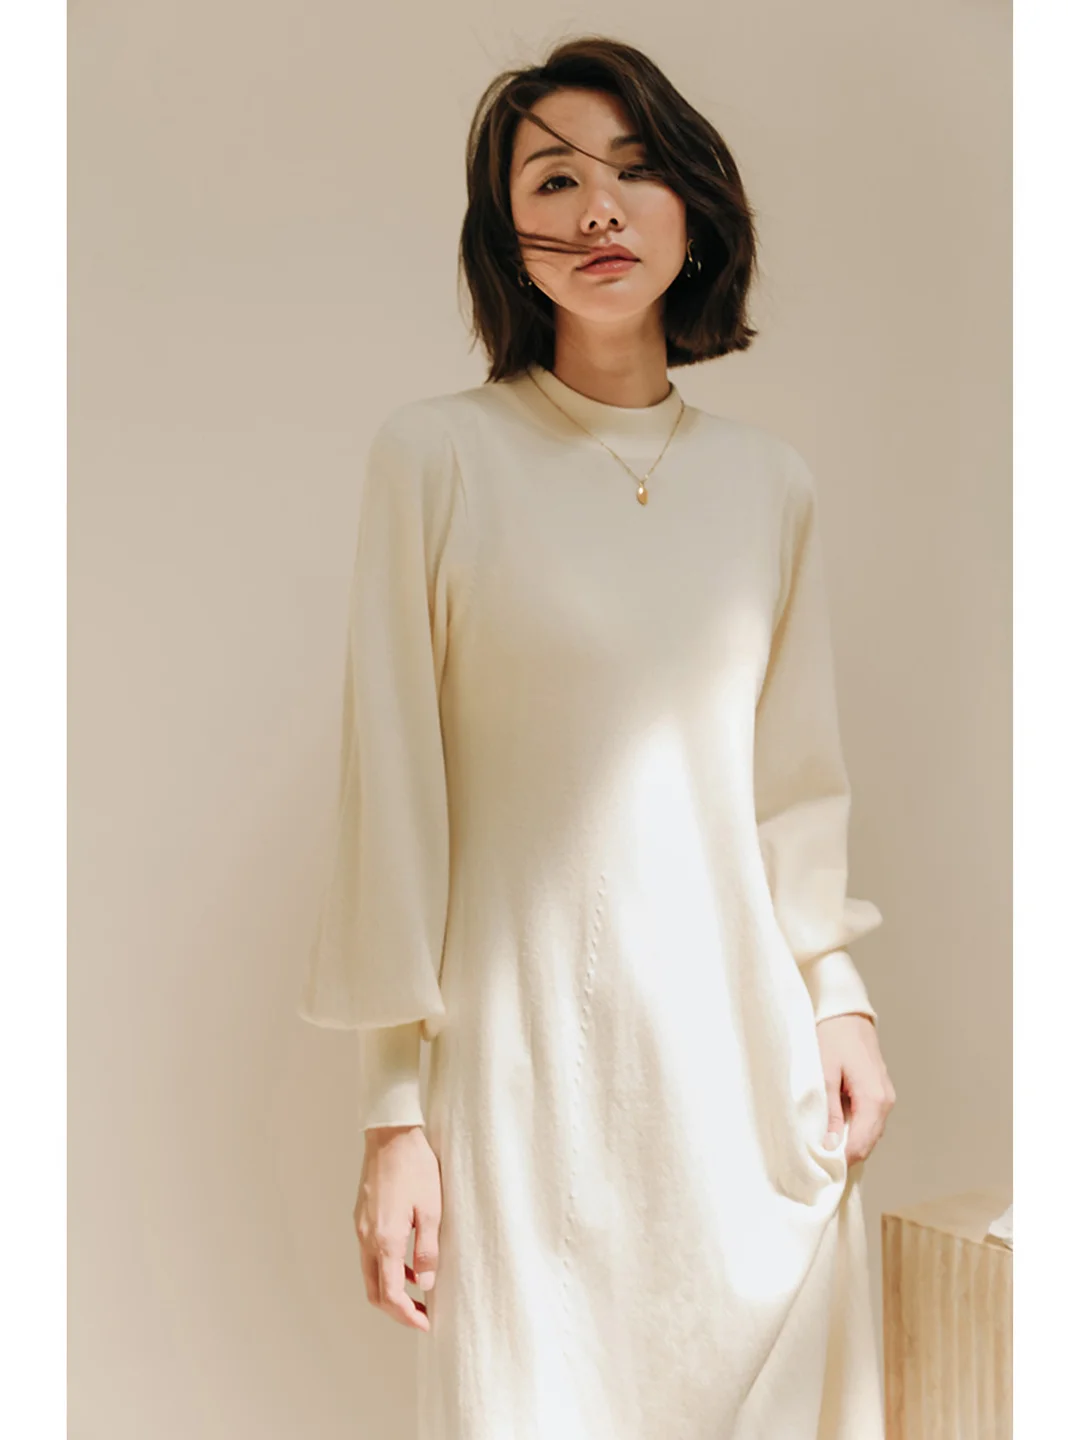 White Woolen Dress Knitted Dress Women's Autumn and Winter Long Half High Collar Underlay Dress Black Loose Bottom Skirt